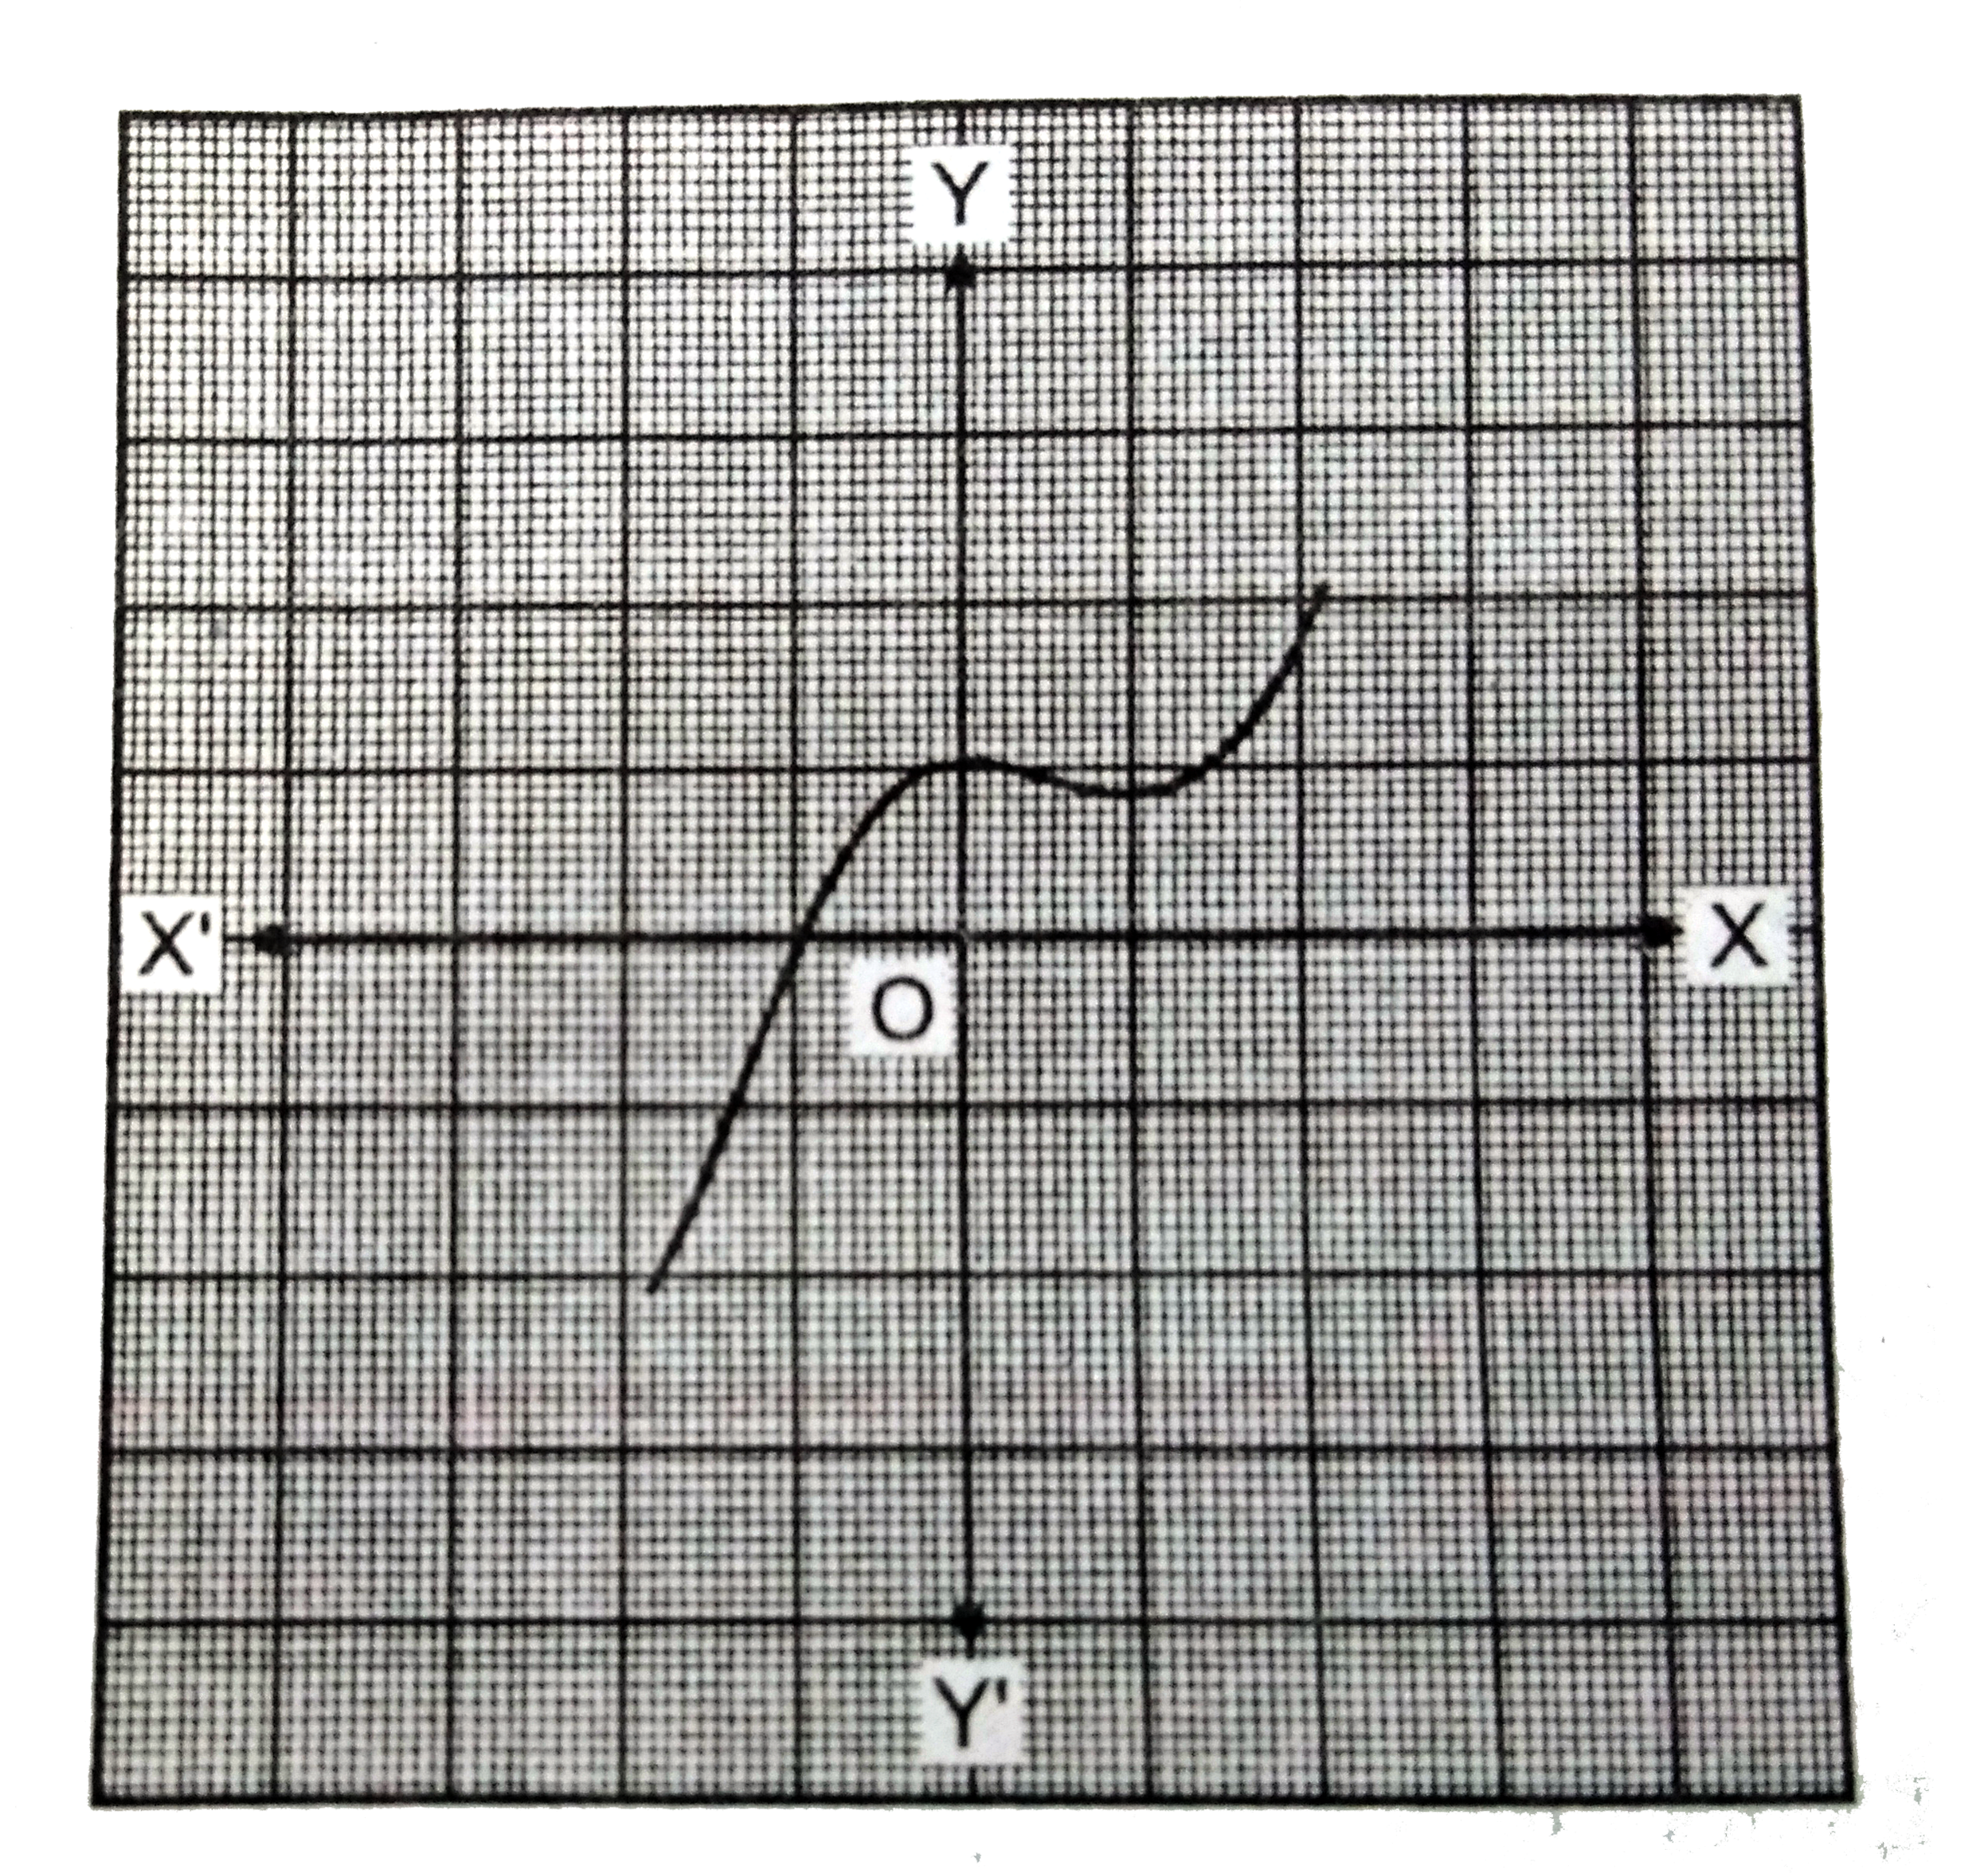 नीचे चित्र में y=p(x) के आलेख दिया गया है जहाँ p(x) एक बहुपद है | प्रत्येक स्थिति में शून्यांक की संख्या ज्ञात कीजिए |